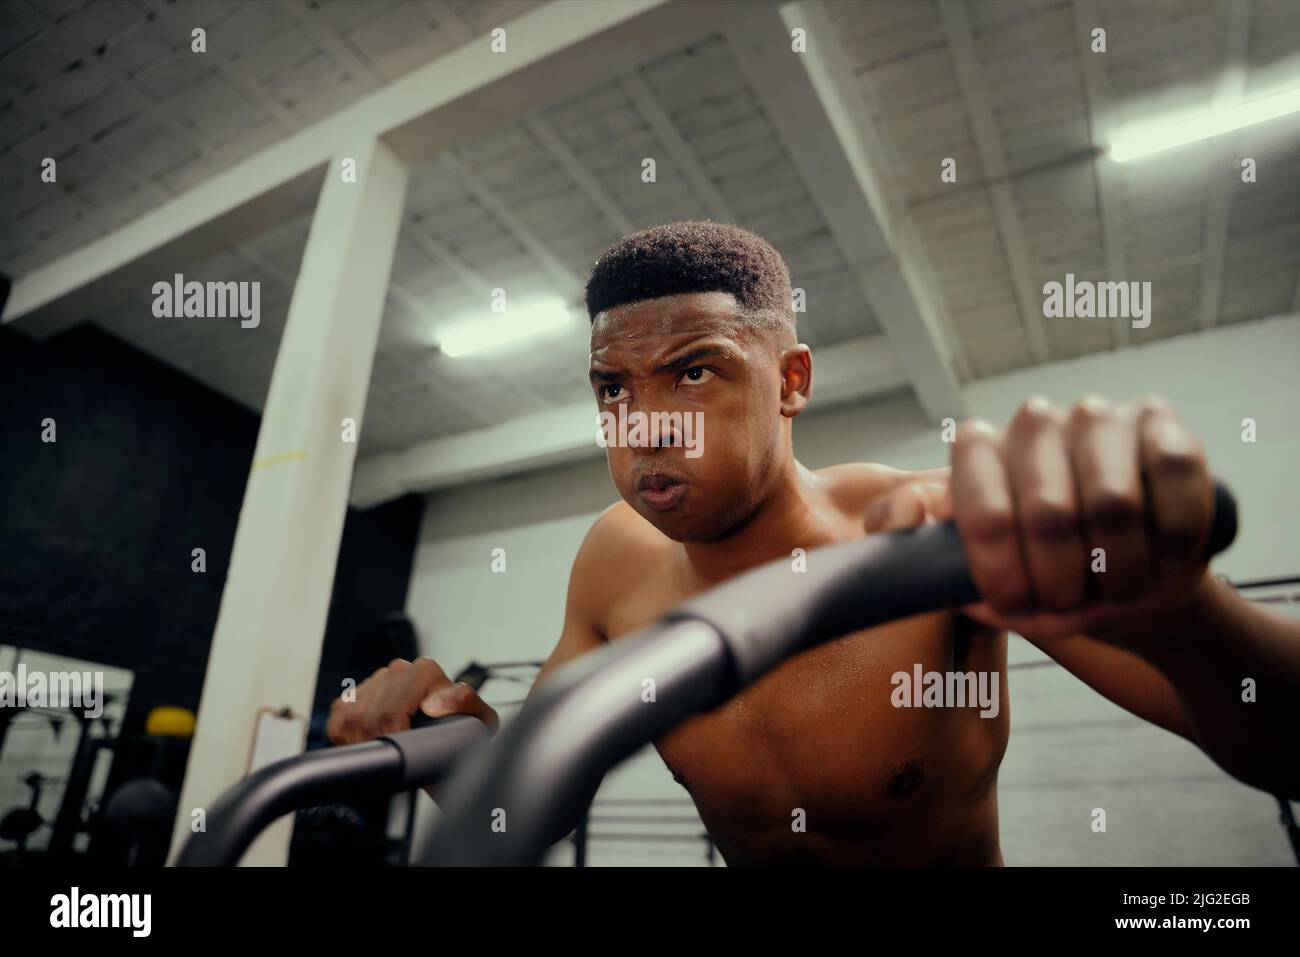 Afro-américain utilisant un entraîneur elliptique pendant l'entraînement de cross-fit. Athlète masculin s'exerçant intensément dans la salle de sport. Photo de haute qualité Banque D'Images